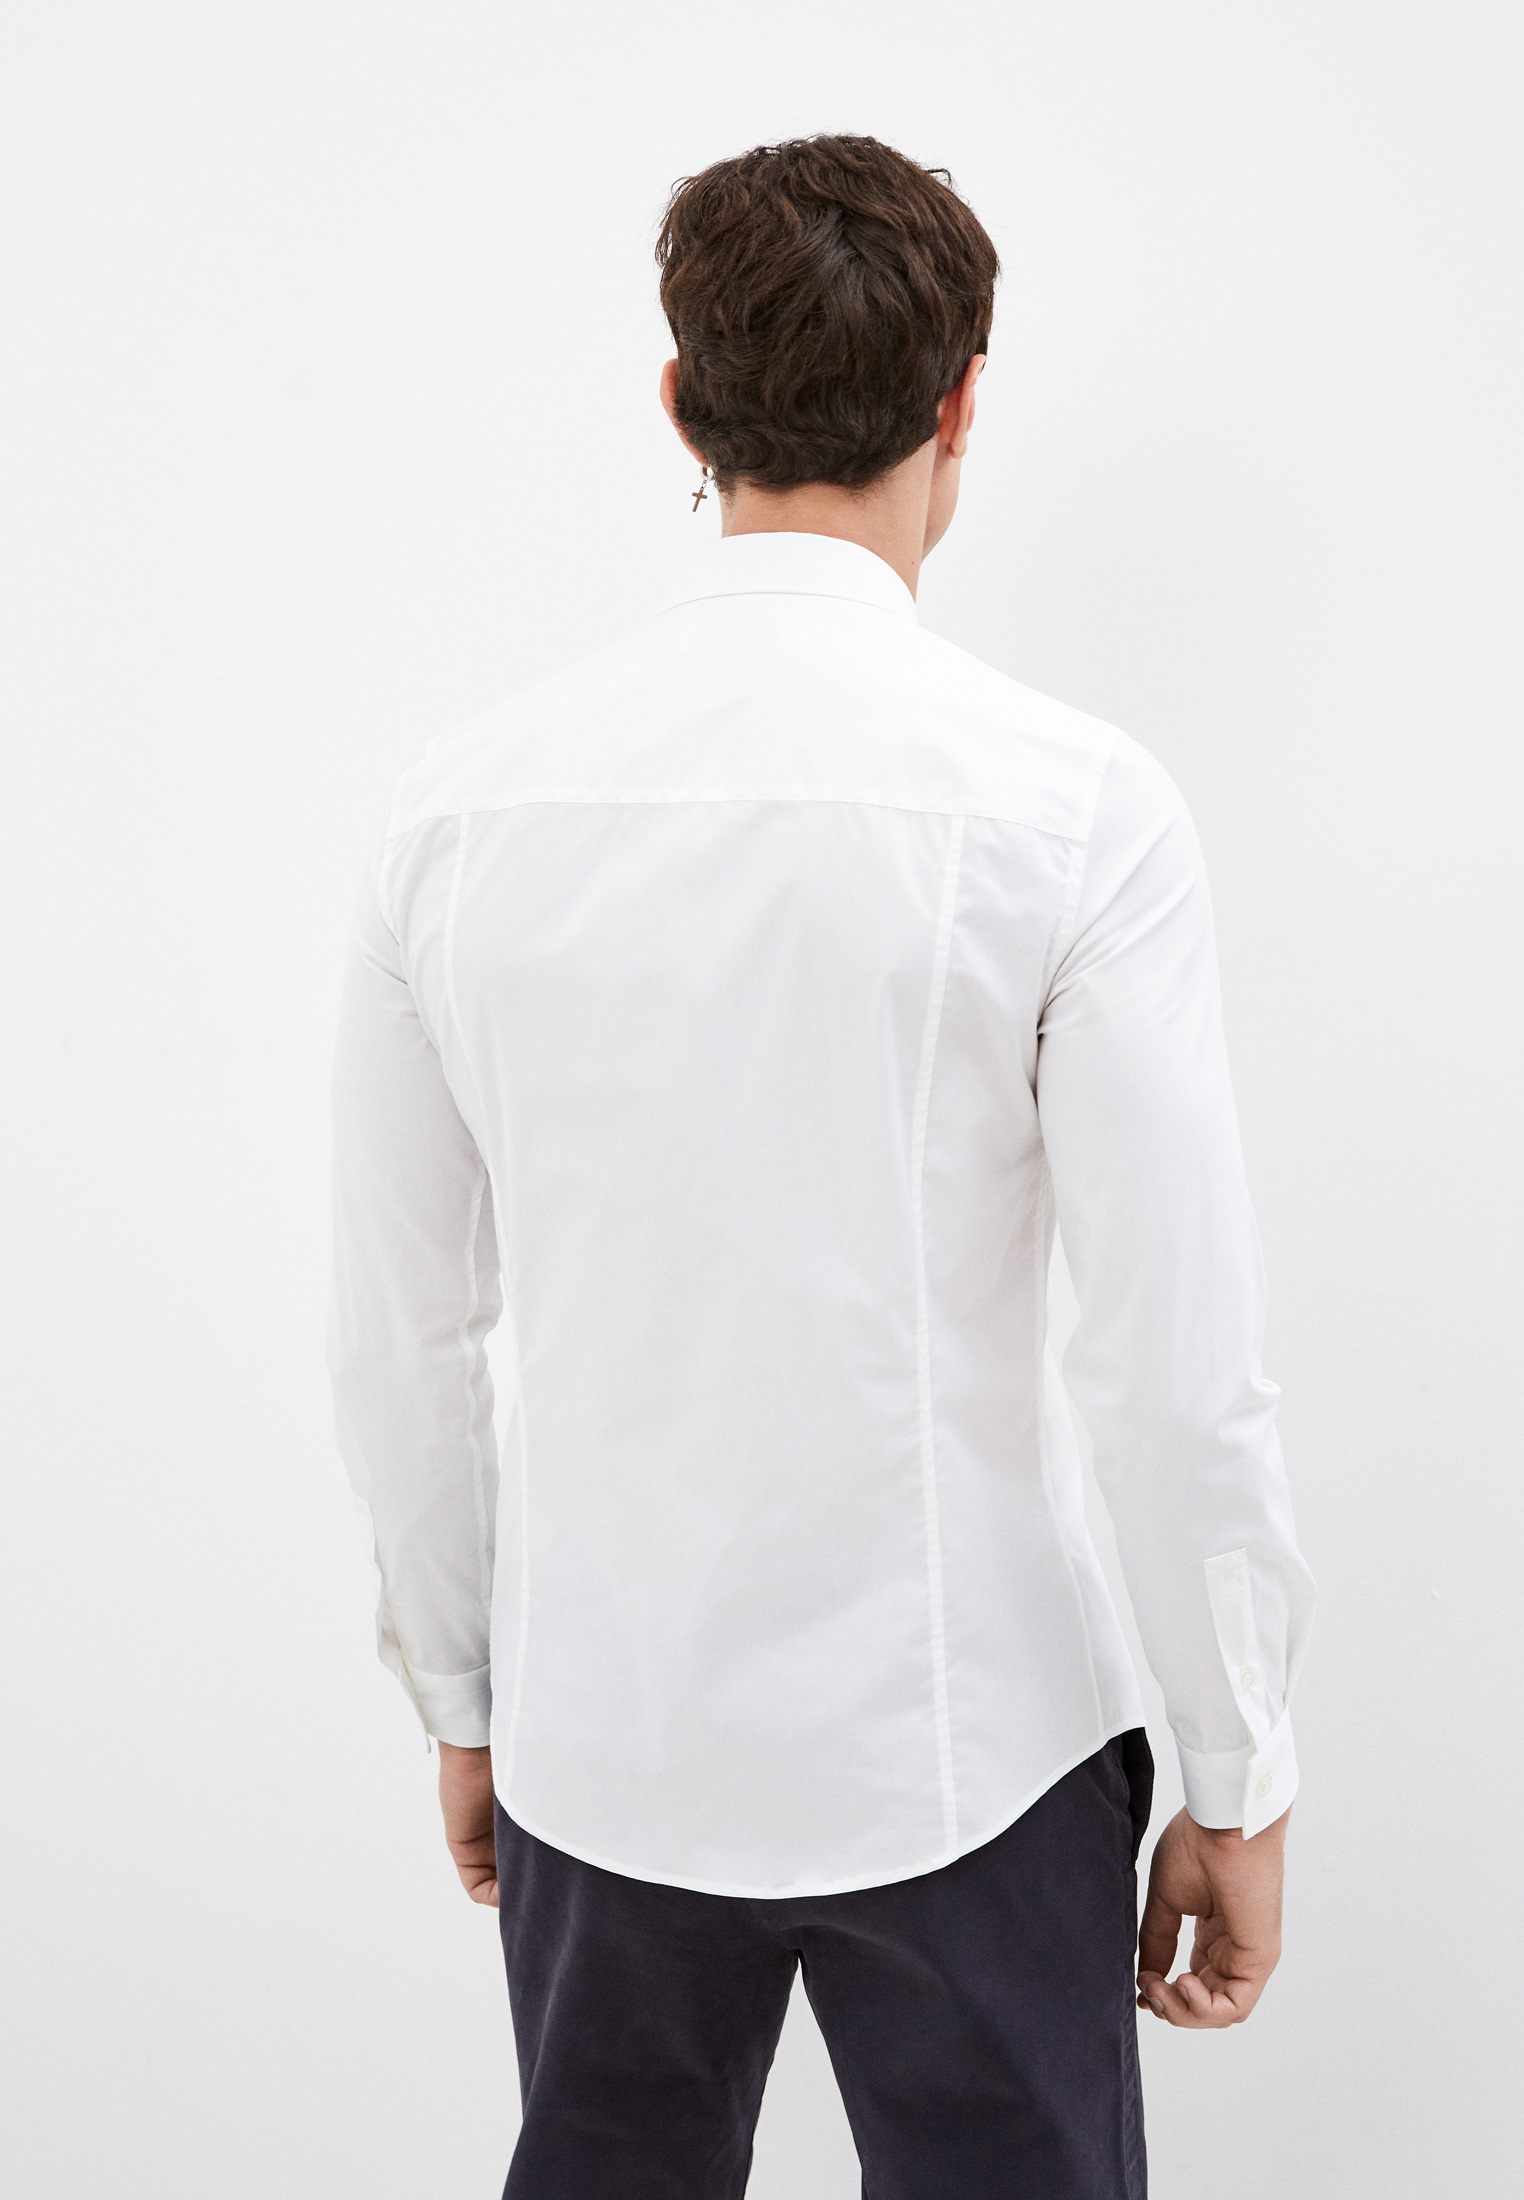 Рубашка с длинным рукавом Bikkembergs (Биккембергс) C C 009 80 S 2931: изображение 9